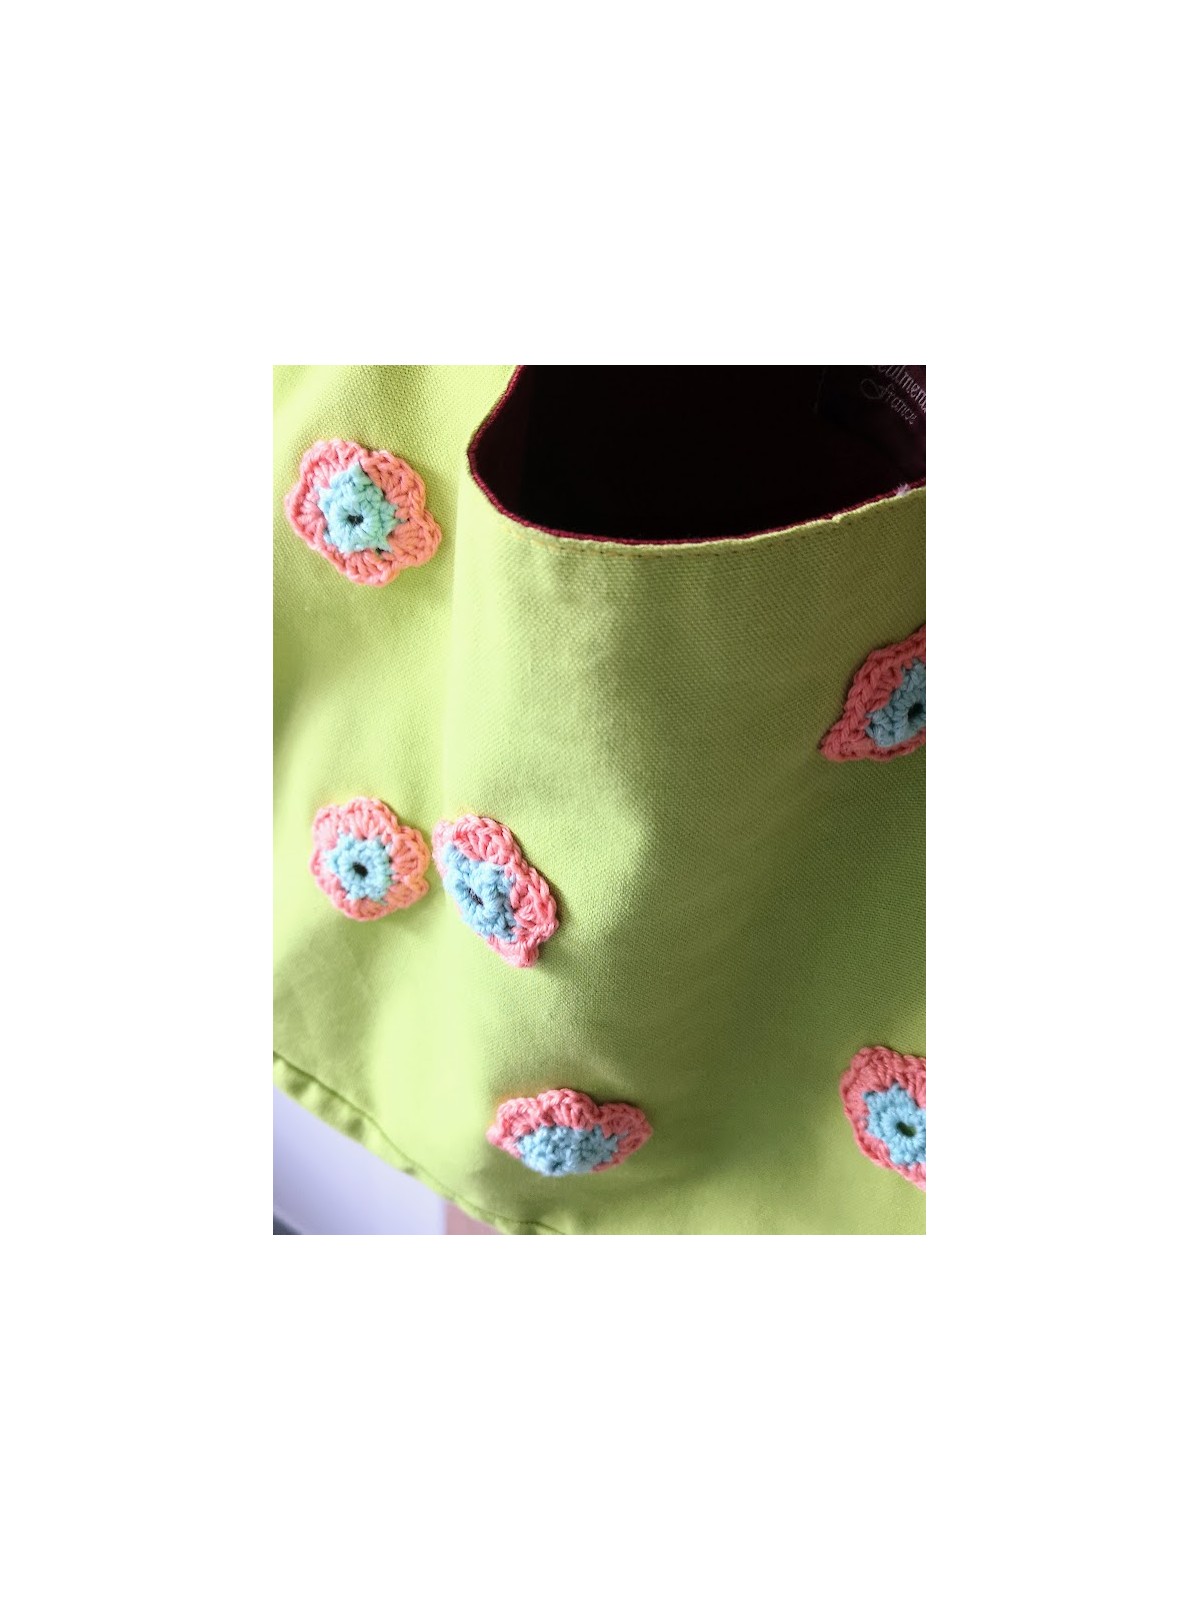 Sac collection unique coloré avec motif fleur l 2 vue broderies l Tilleulmenthe mode boutique de vêtements femme en lignr